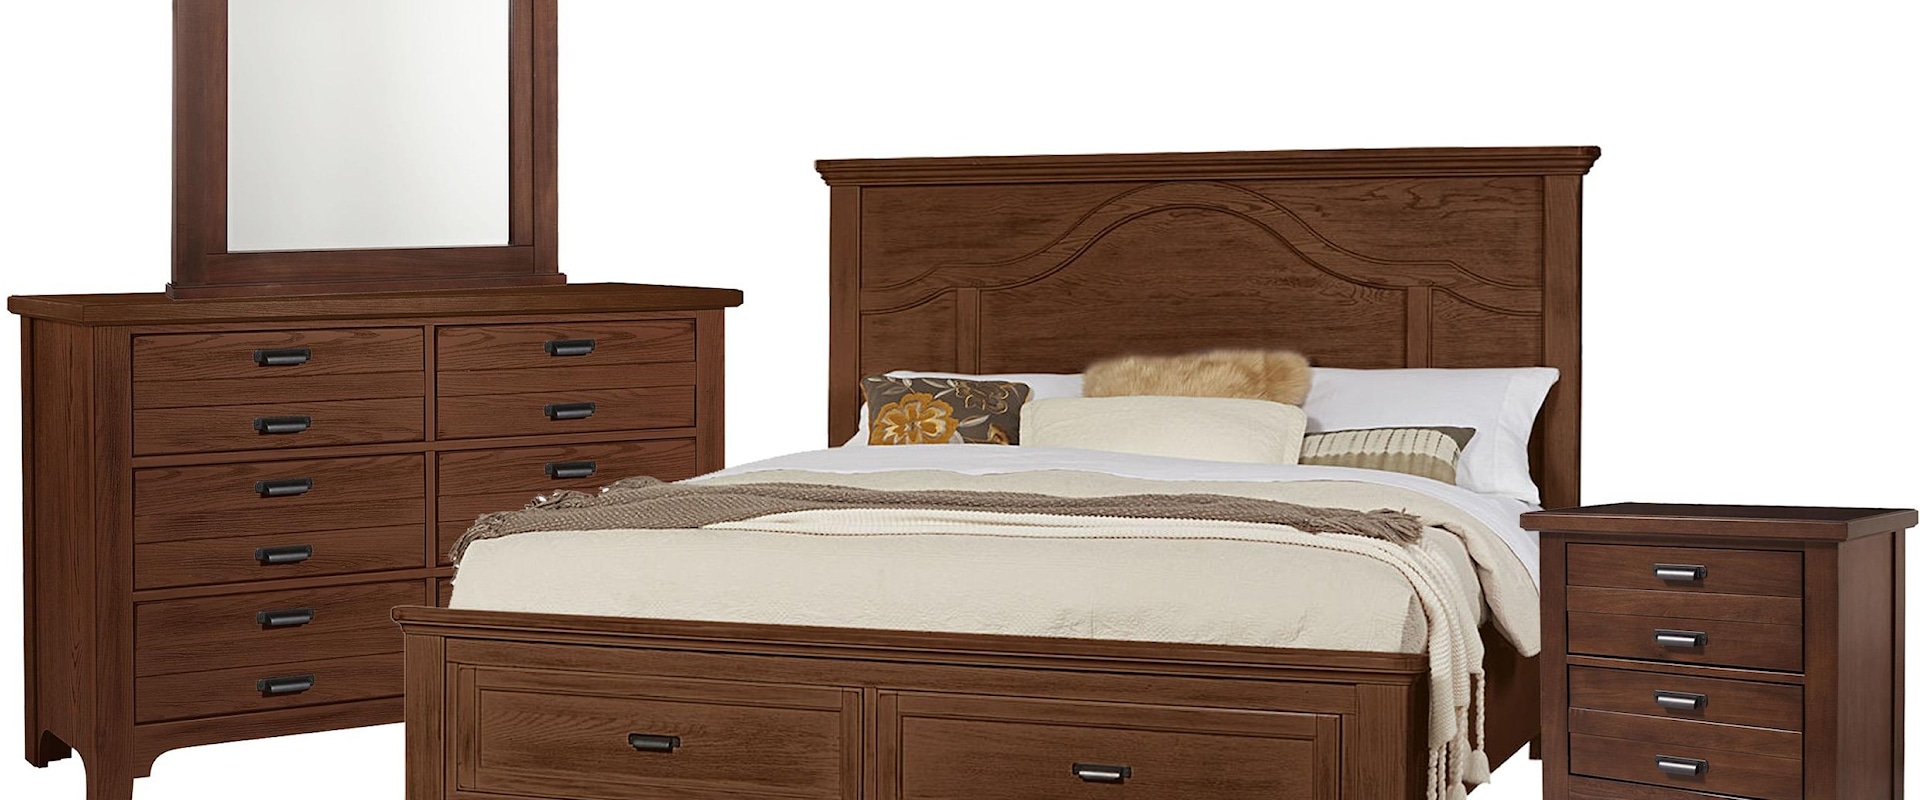 Decorative Queen Panel Bed, 9 Drawer Dresser, Landscape Mirror & 2 Drawer Nightstand